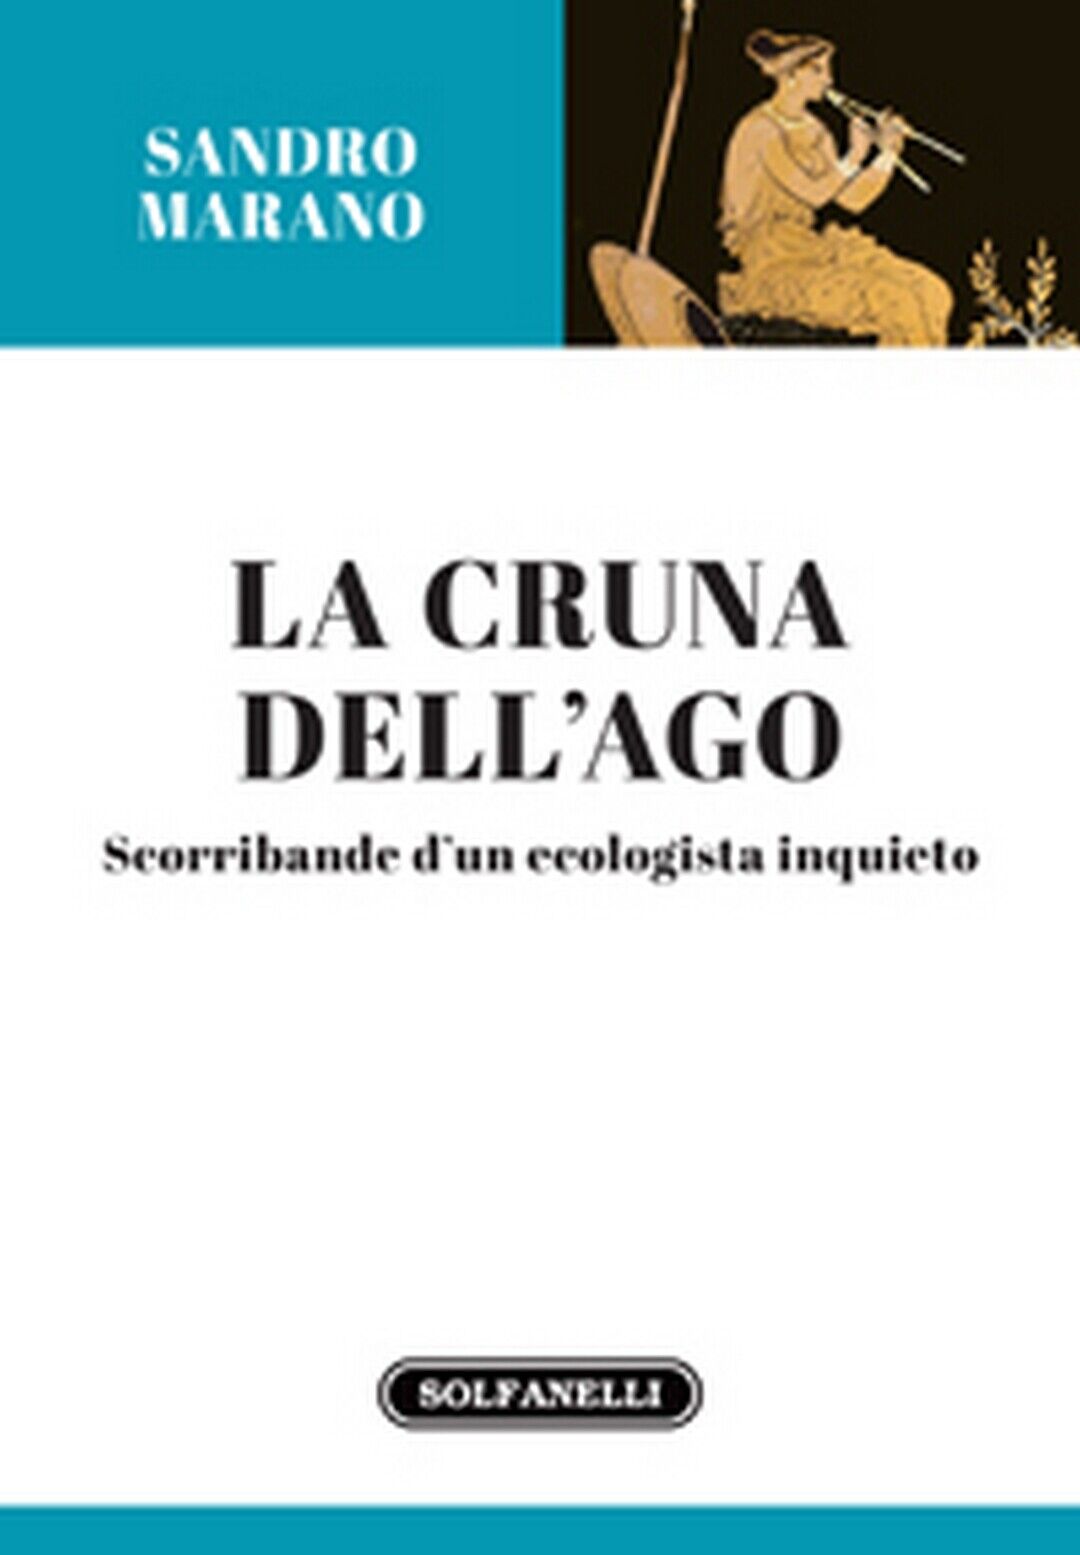 LA CRUNA DELL'AGO  di Sandro Marano,  Solfanelli Edizioni